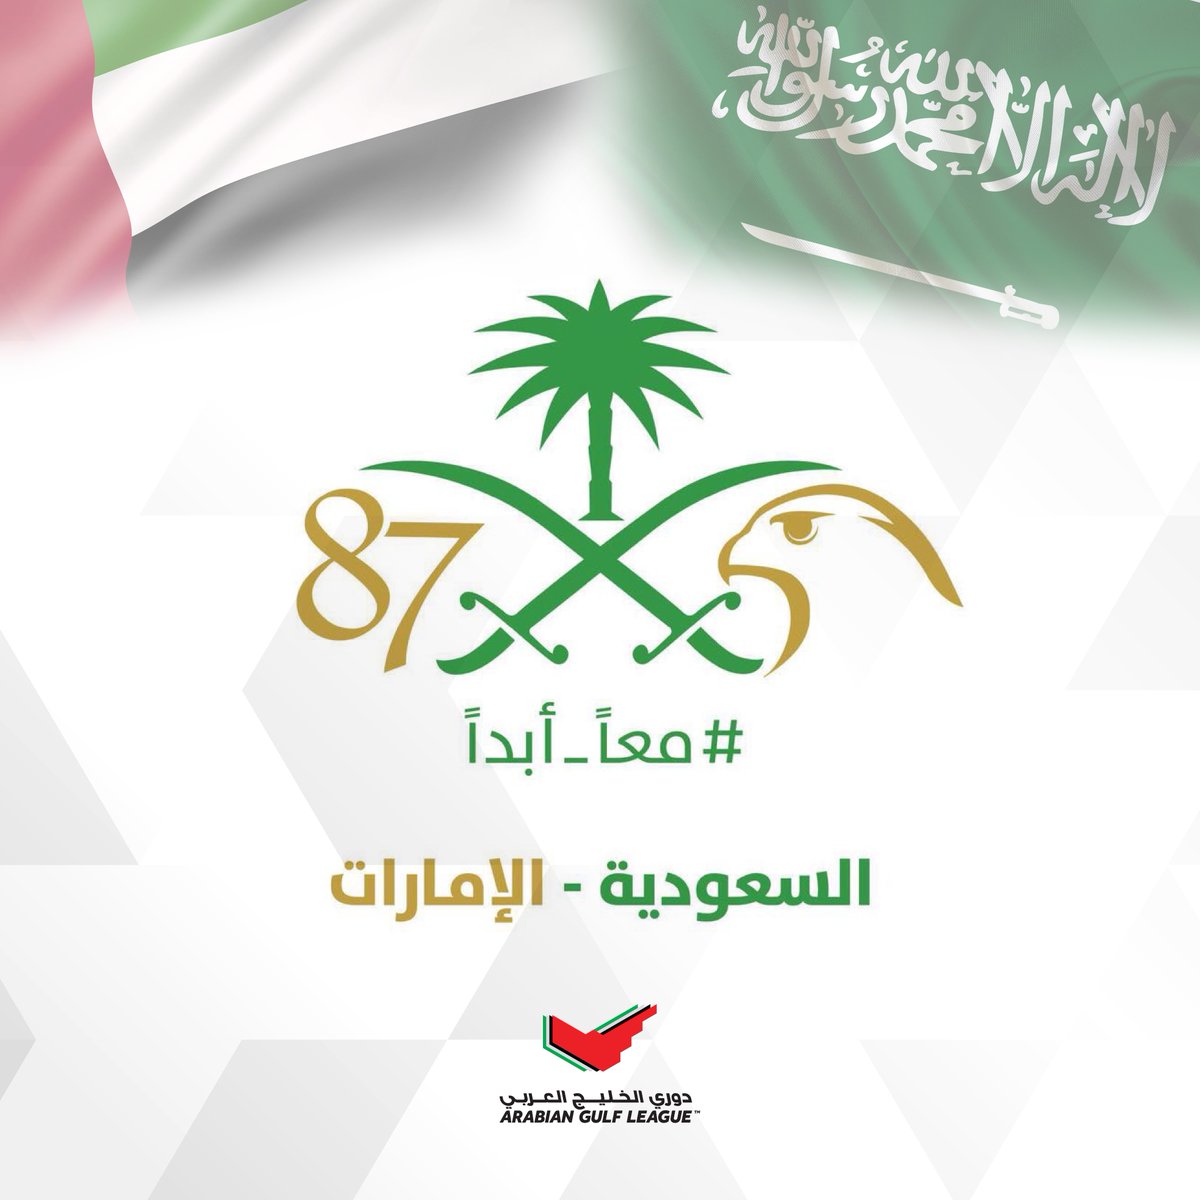 "المحترفين" تشارك السعودية احتفالاتها باليوم الوطني 87 الرياضي خط